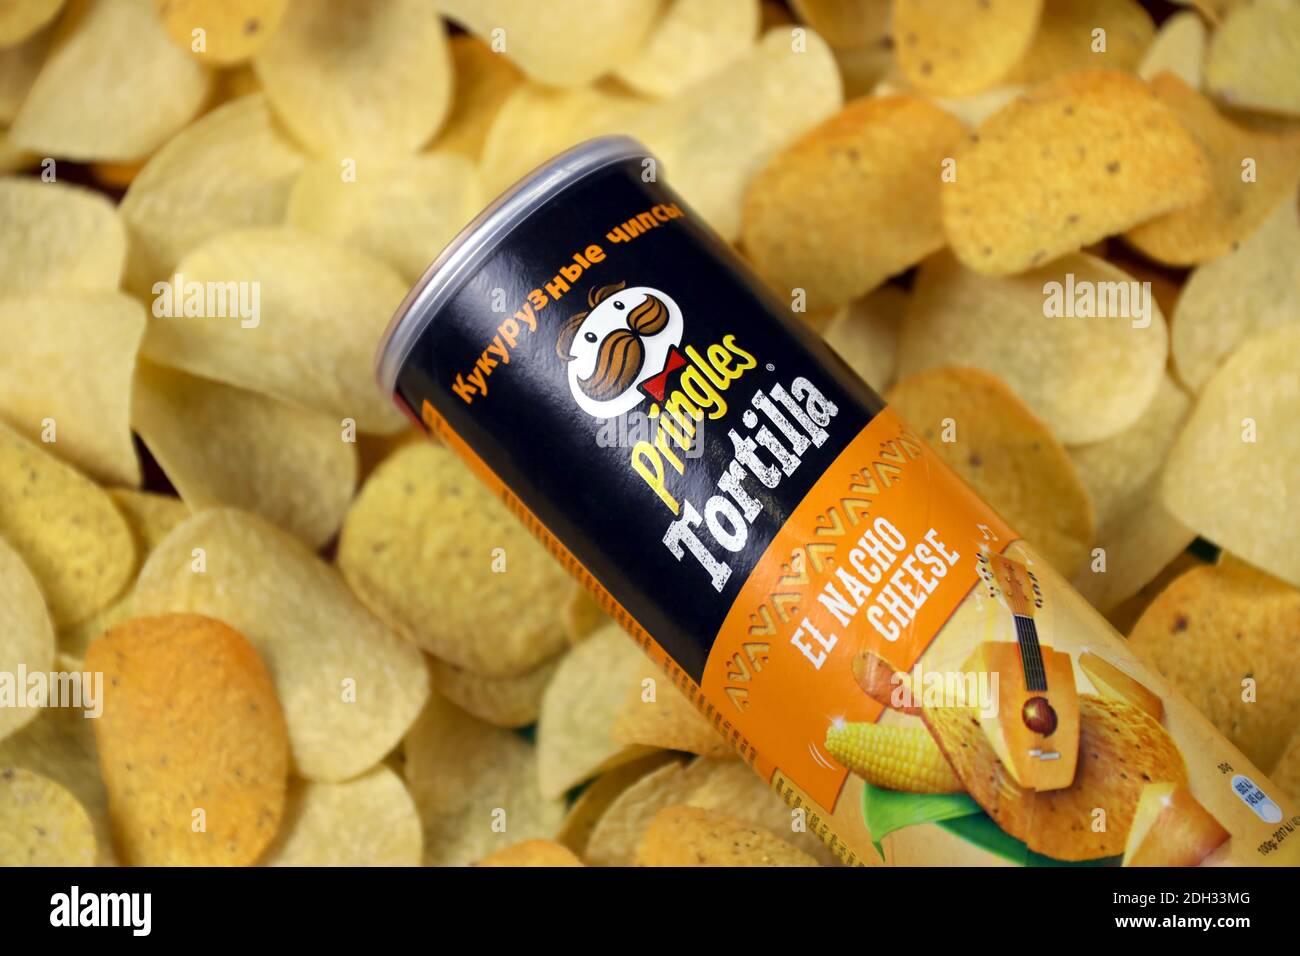 KHARKOV, UKRAINE - 23 NOVEMBRE 2020: Pringles el nacho saveur de fromage. Le tube en carton peut être utilisé sur un fond de chips Pringles. Pringles est un soutien-gorge Banque D'Images